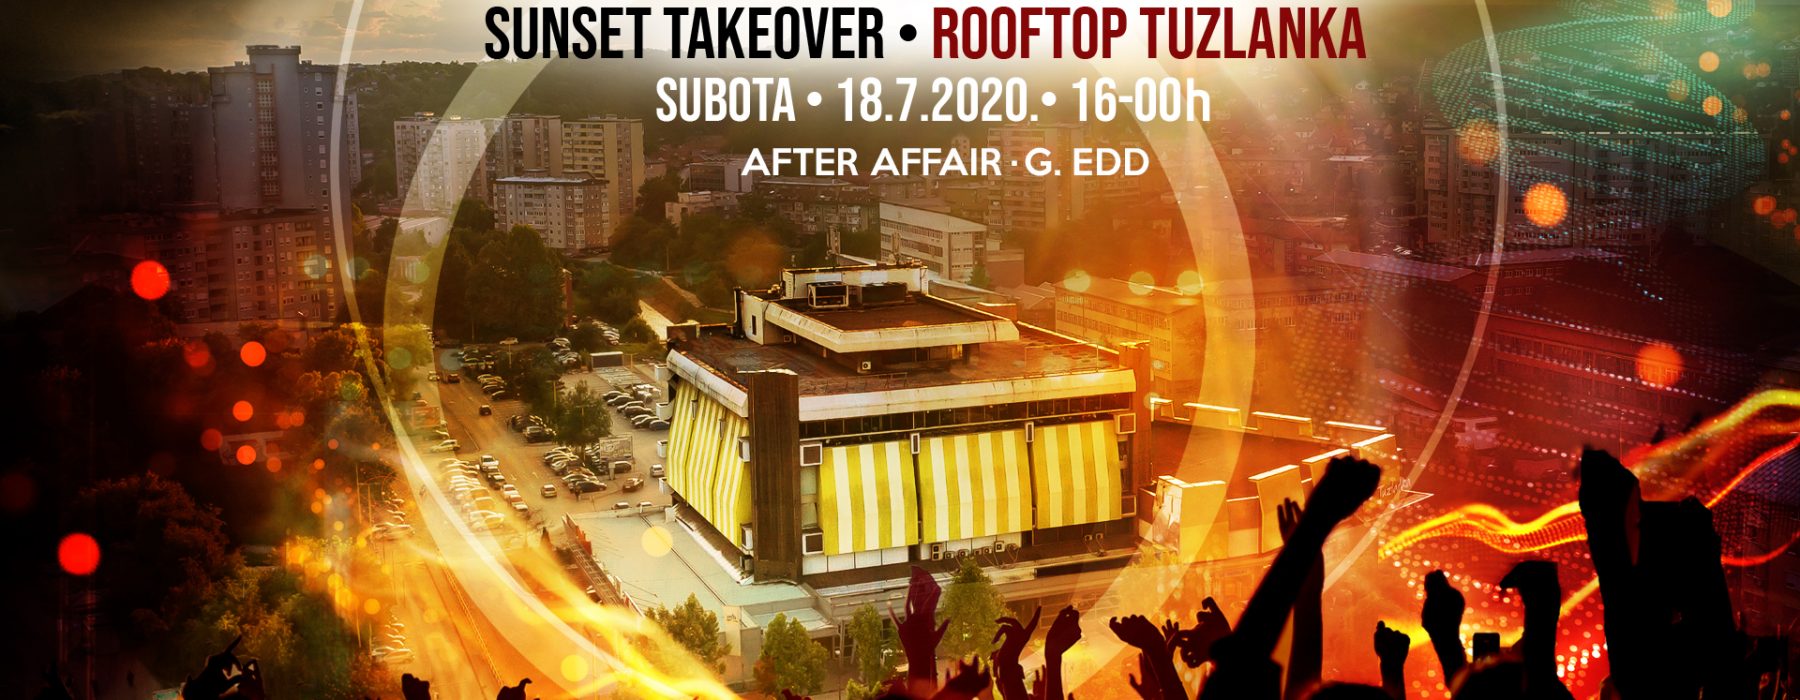 Sunset takeover • Rooftop Tuzlanka • #ZeusLimitedevents2020